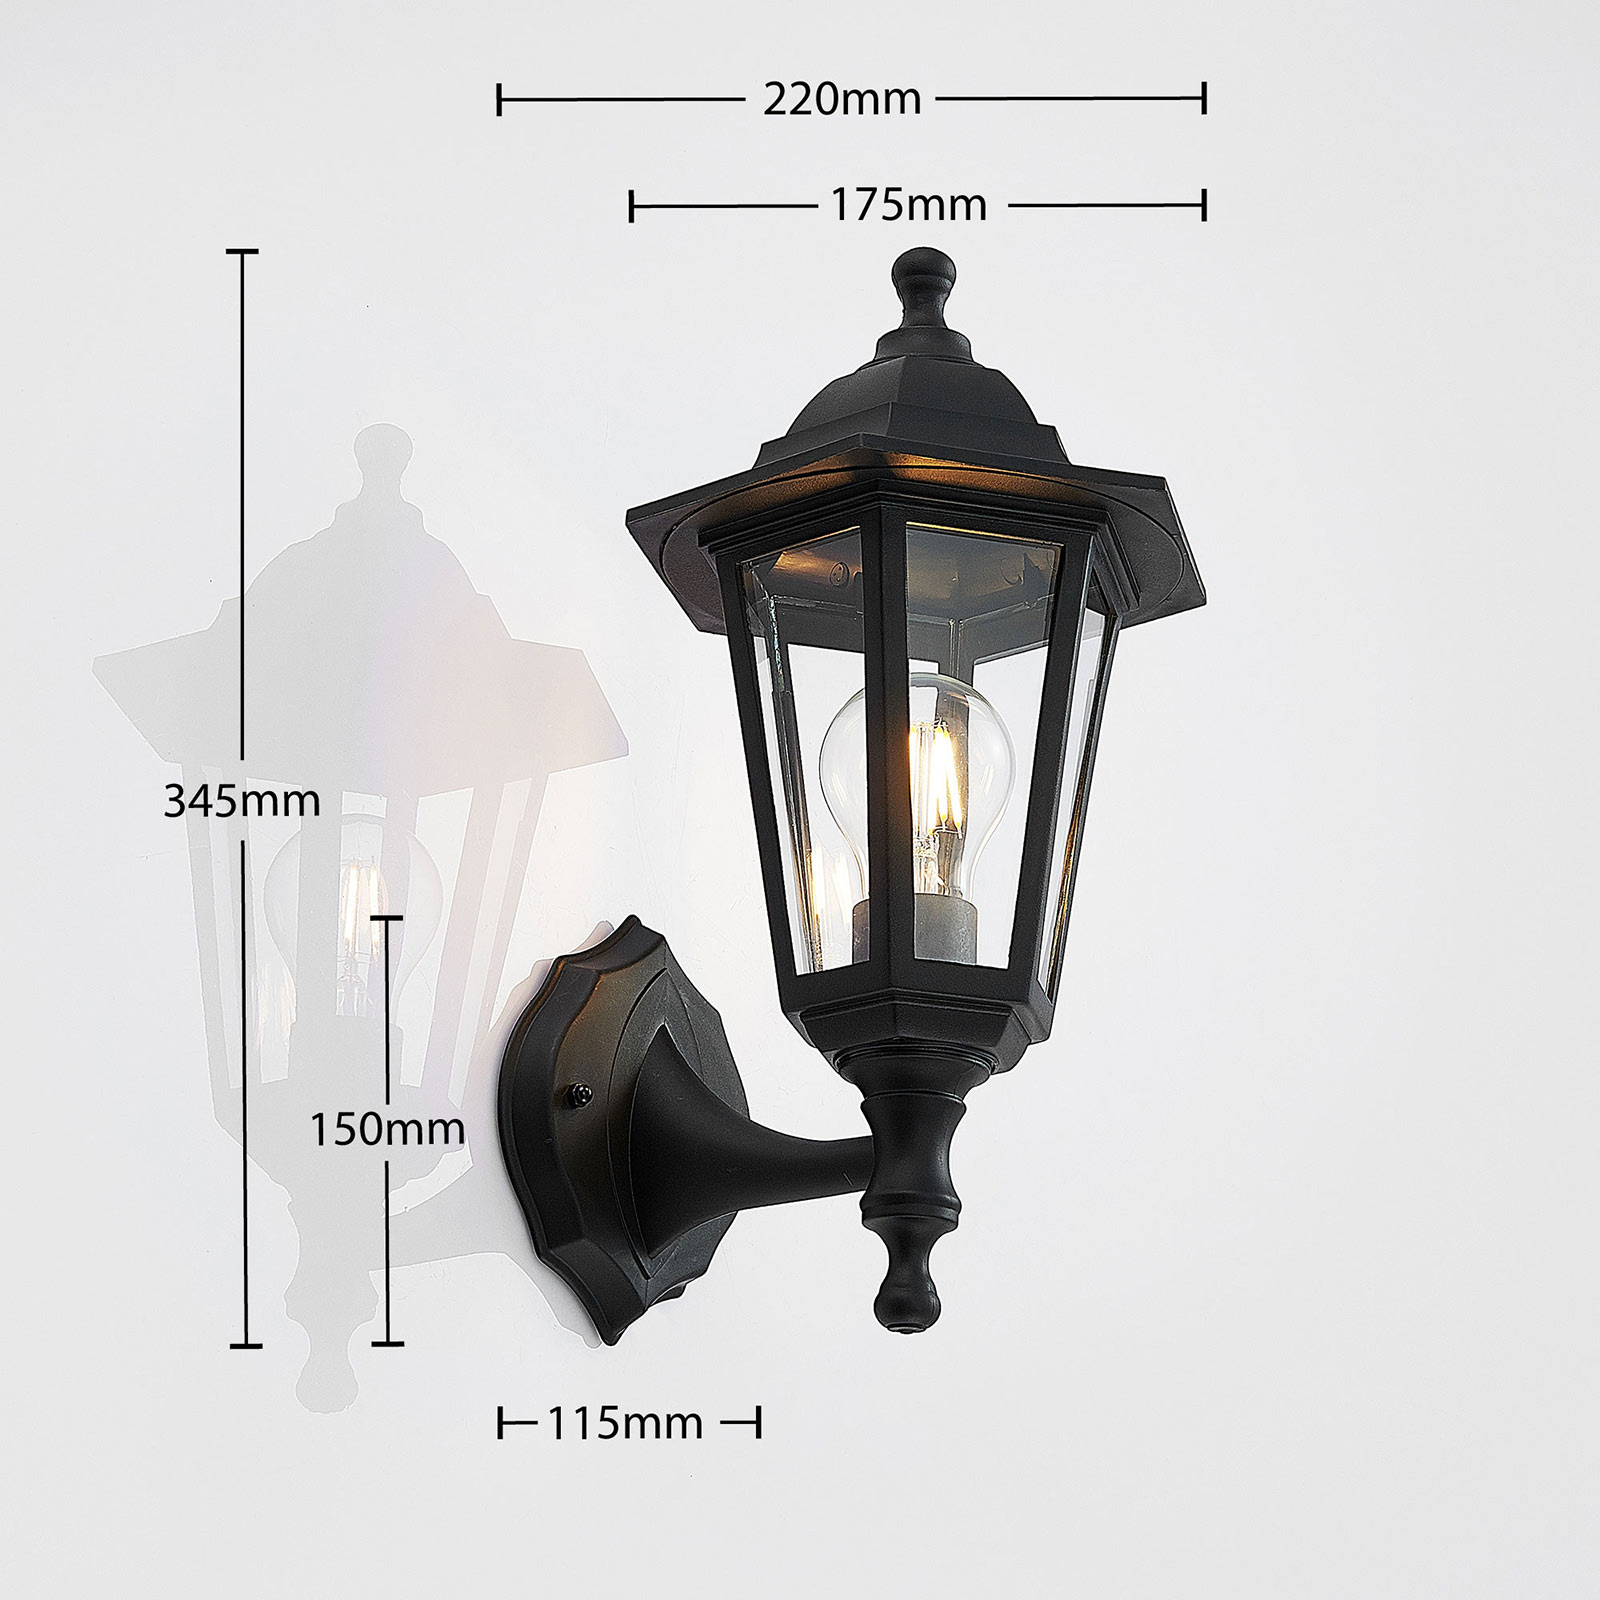 Nane outdoor wall light in a lantern shape, black